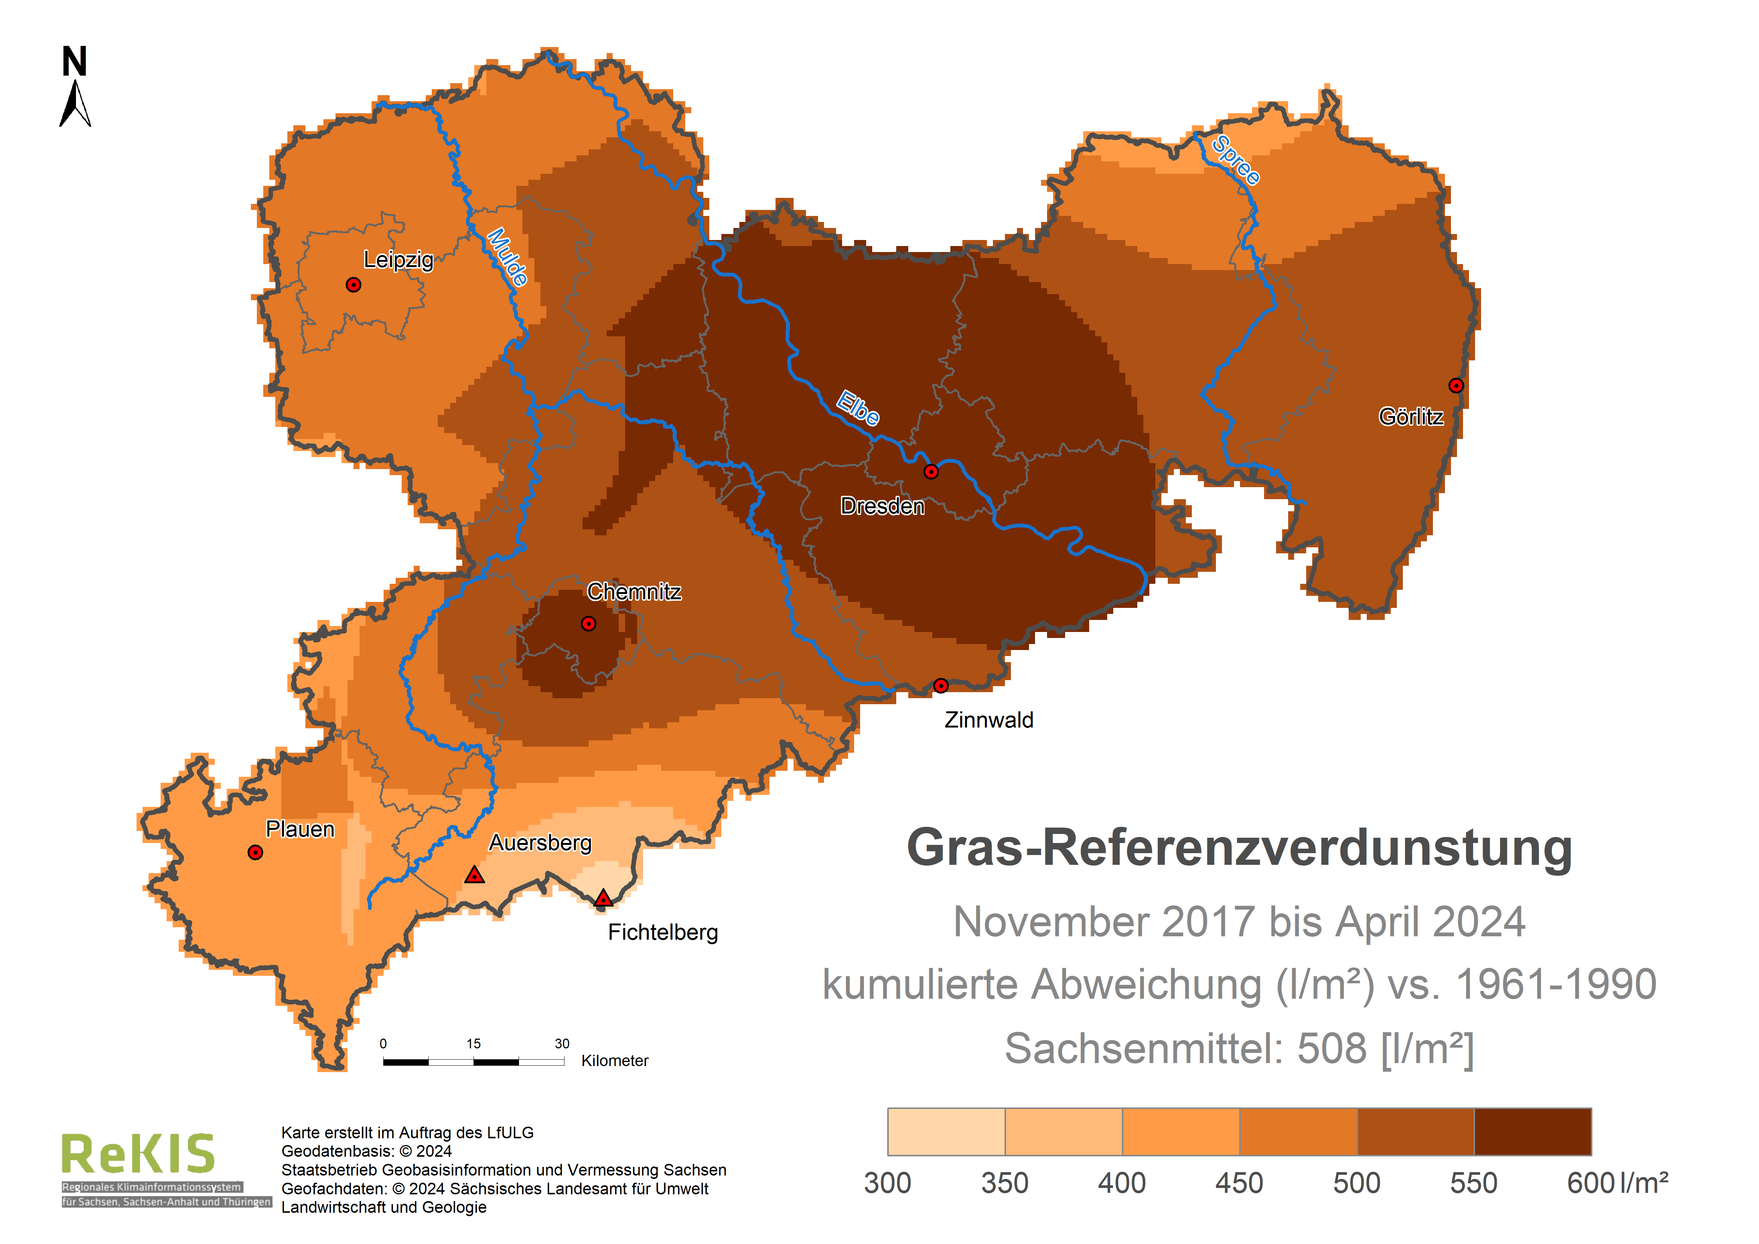 Karte Sachsen mit Darstellung der Gras-Referenzverdunstung im Vergleich zum Referenzzeitraum 1961 bis 1990